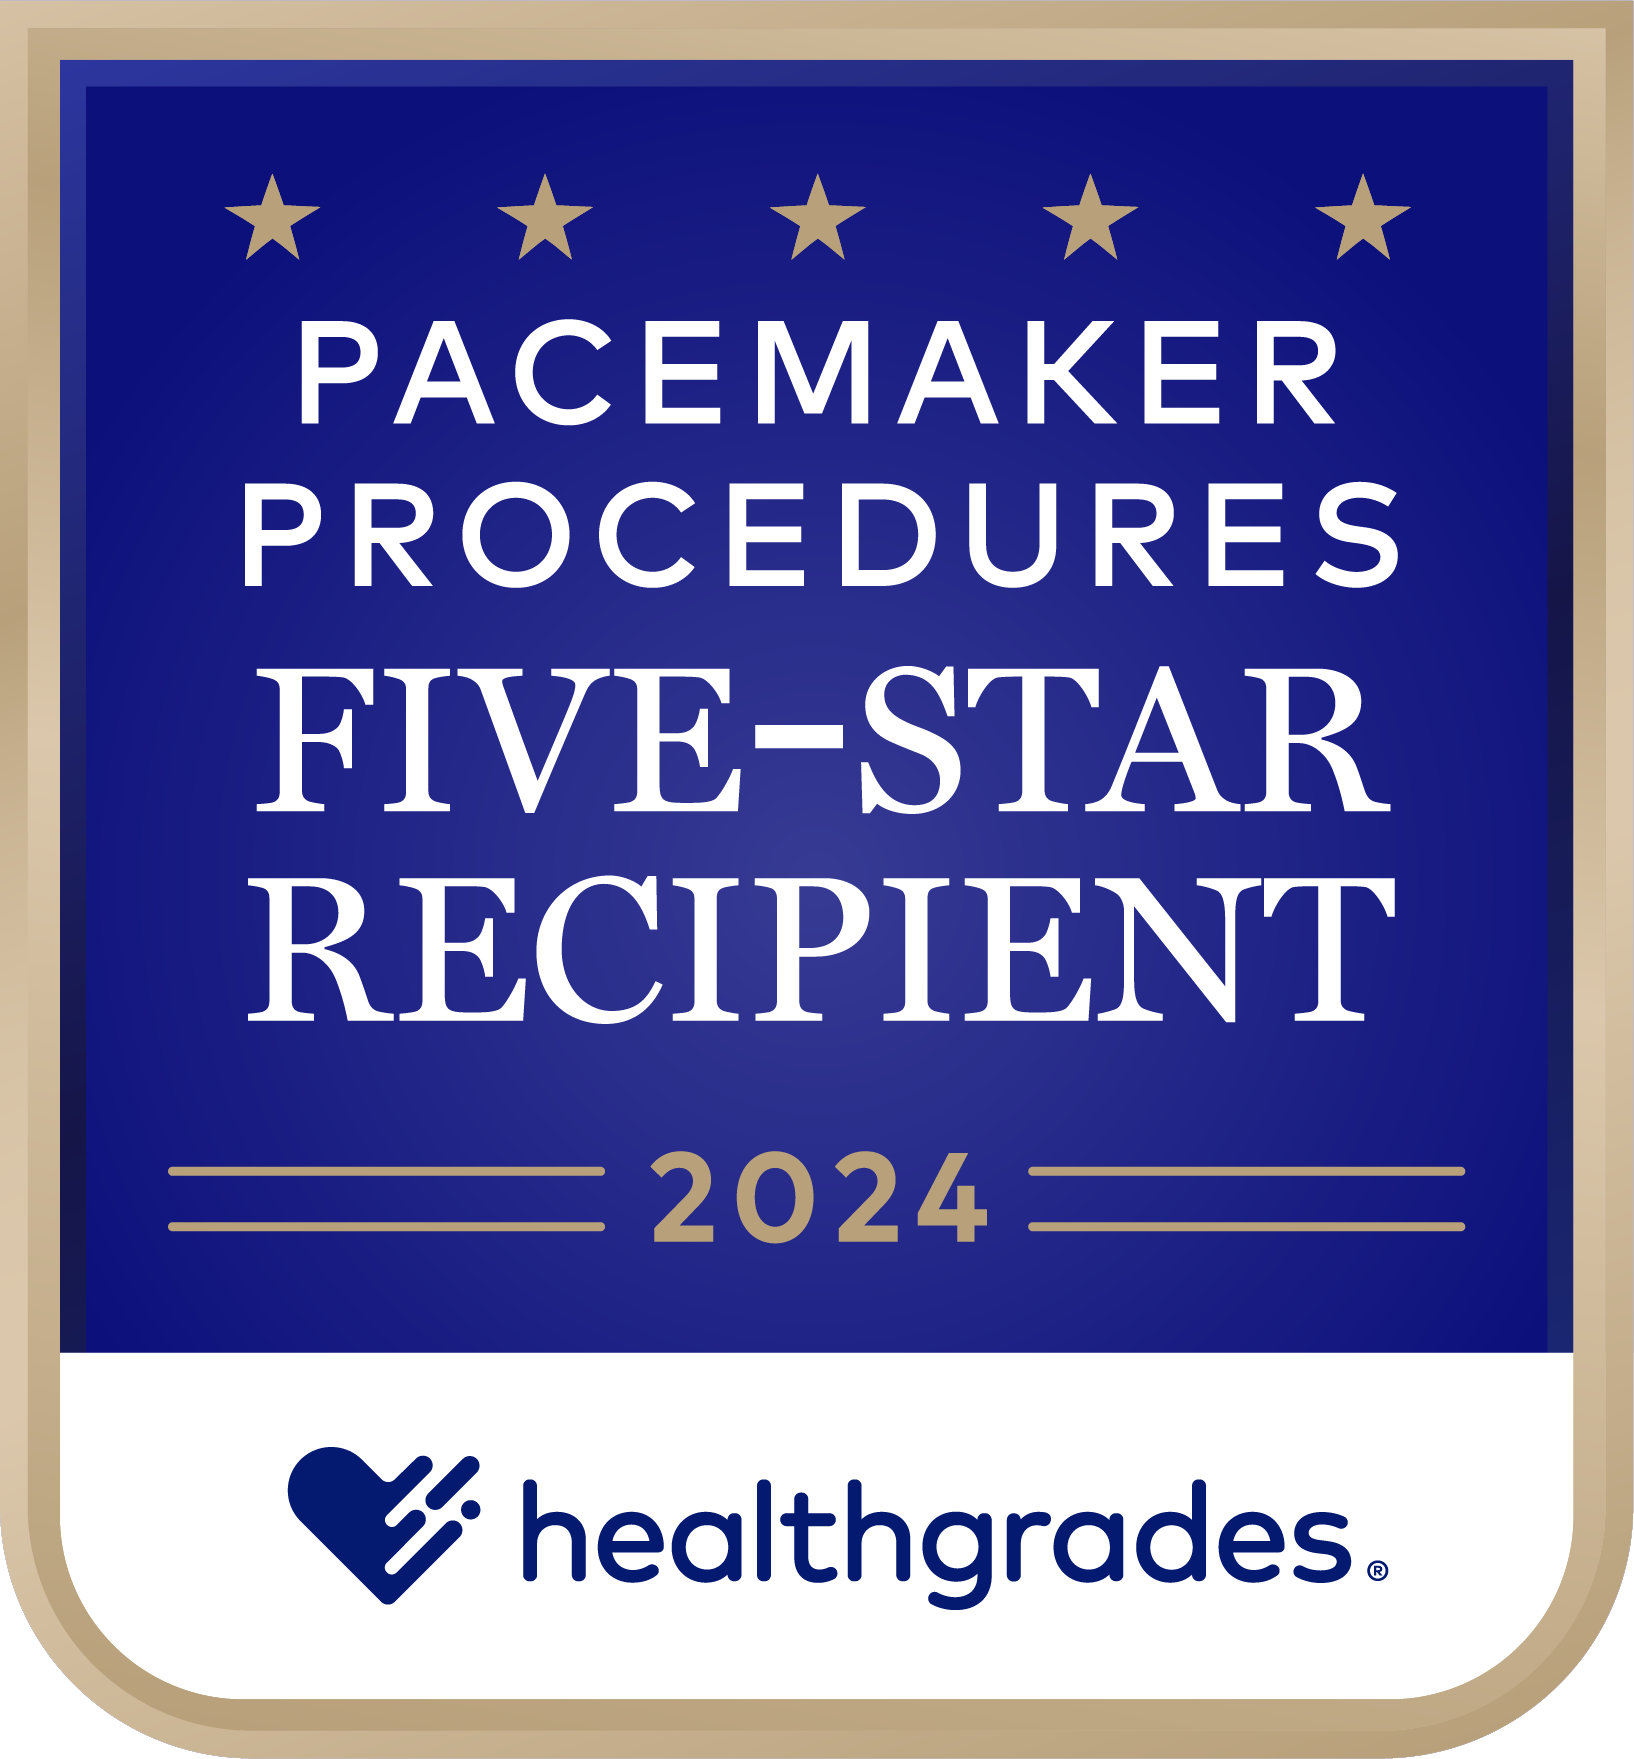 Five Star Recipient for Pacemaker Procedures award 